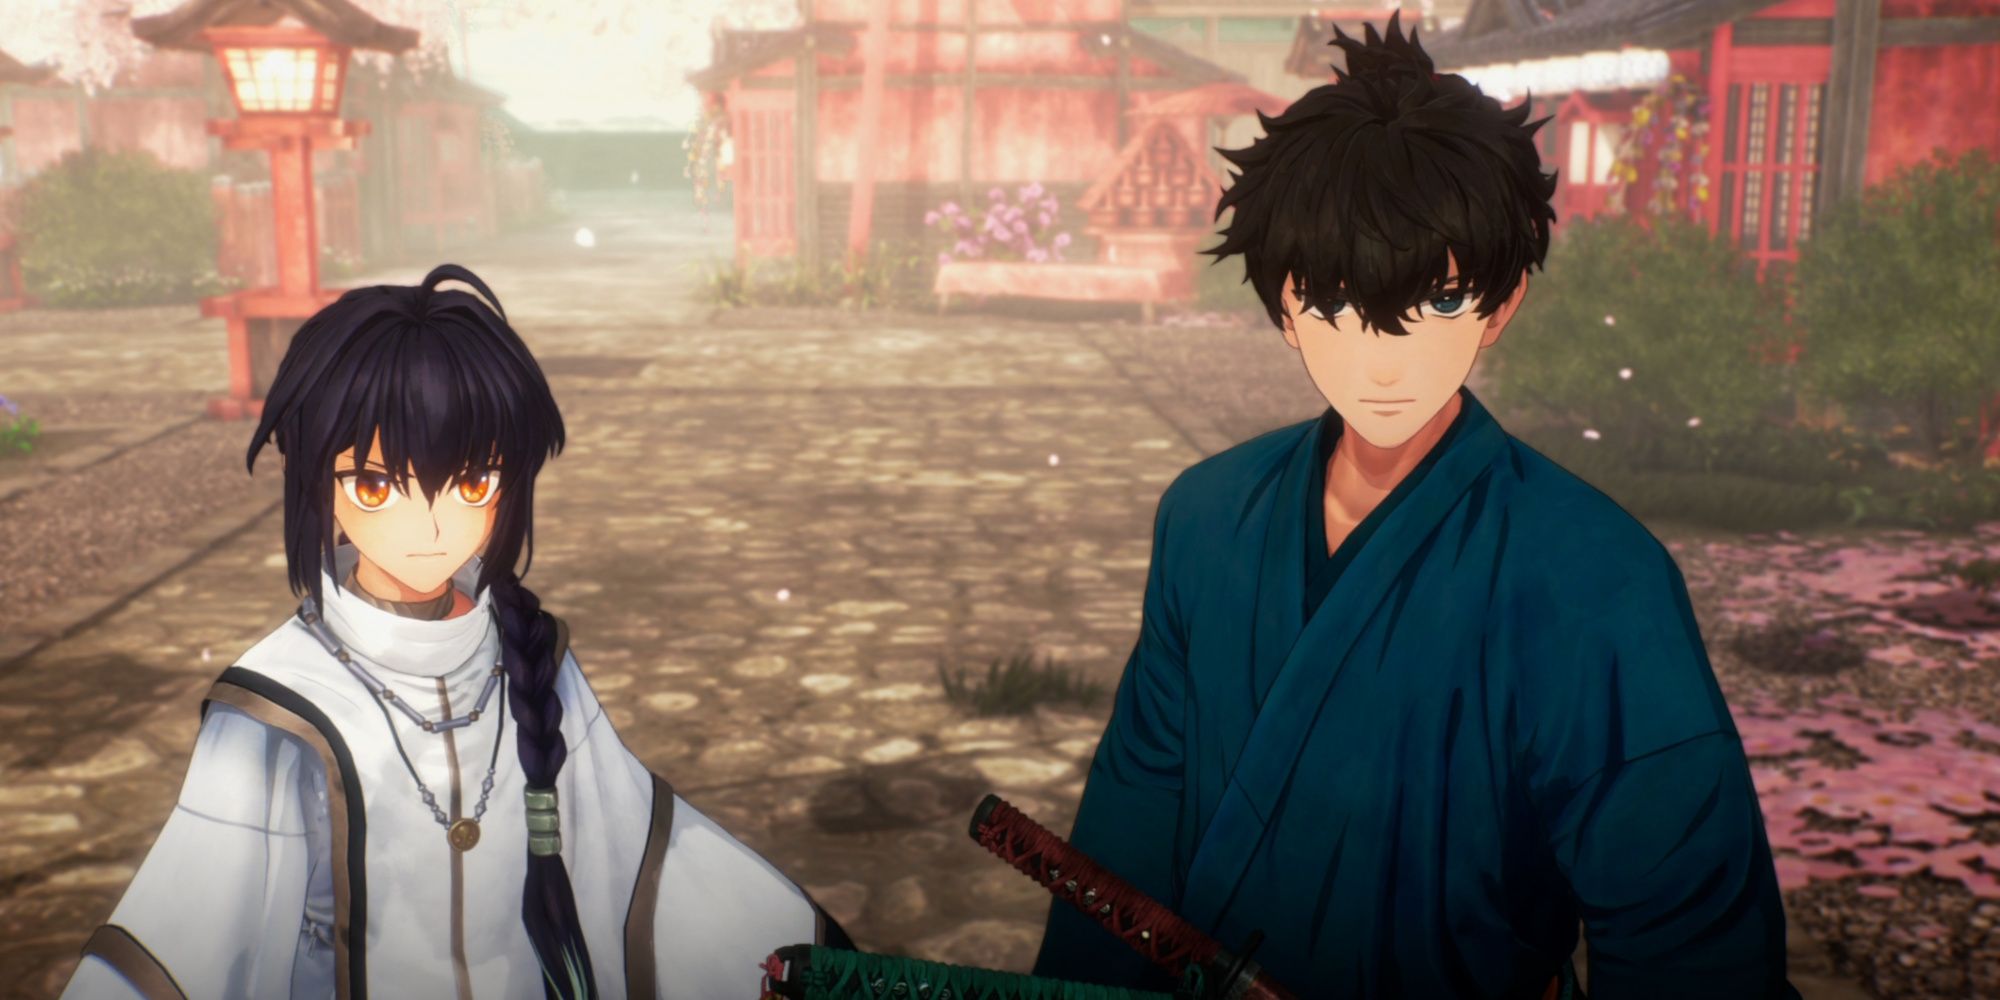 Saber and Iori in Fate:Samurai Remnant